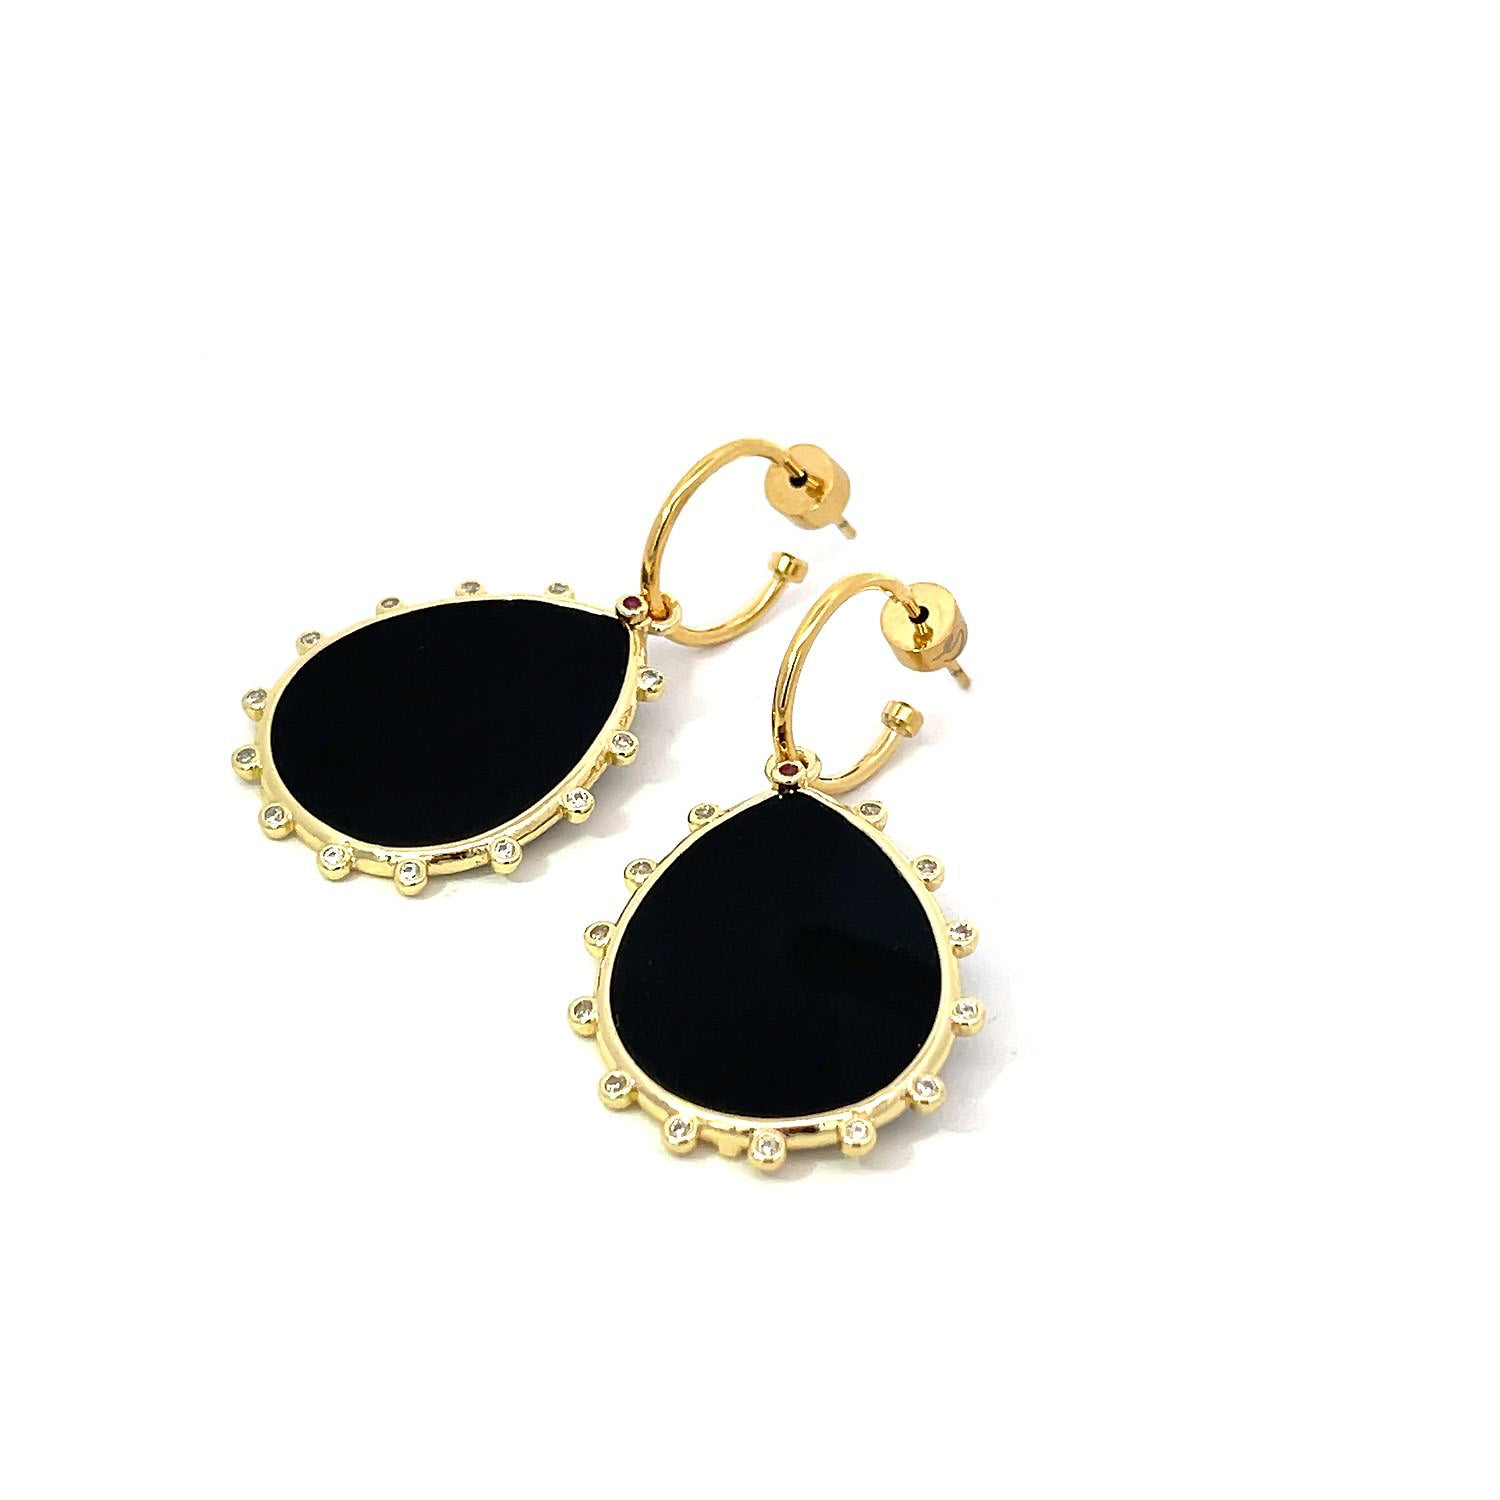 Shop Gosia Orlowska's Black Obsidian Drop Earrings